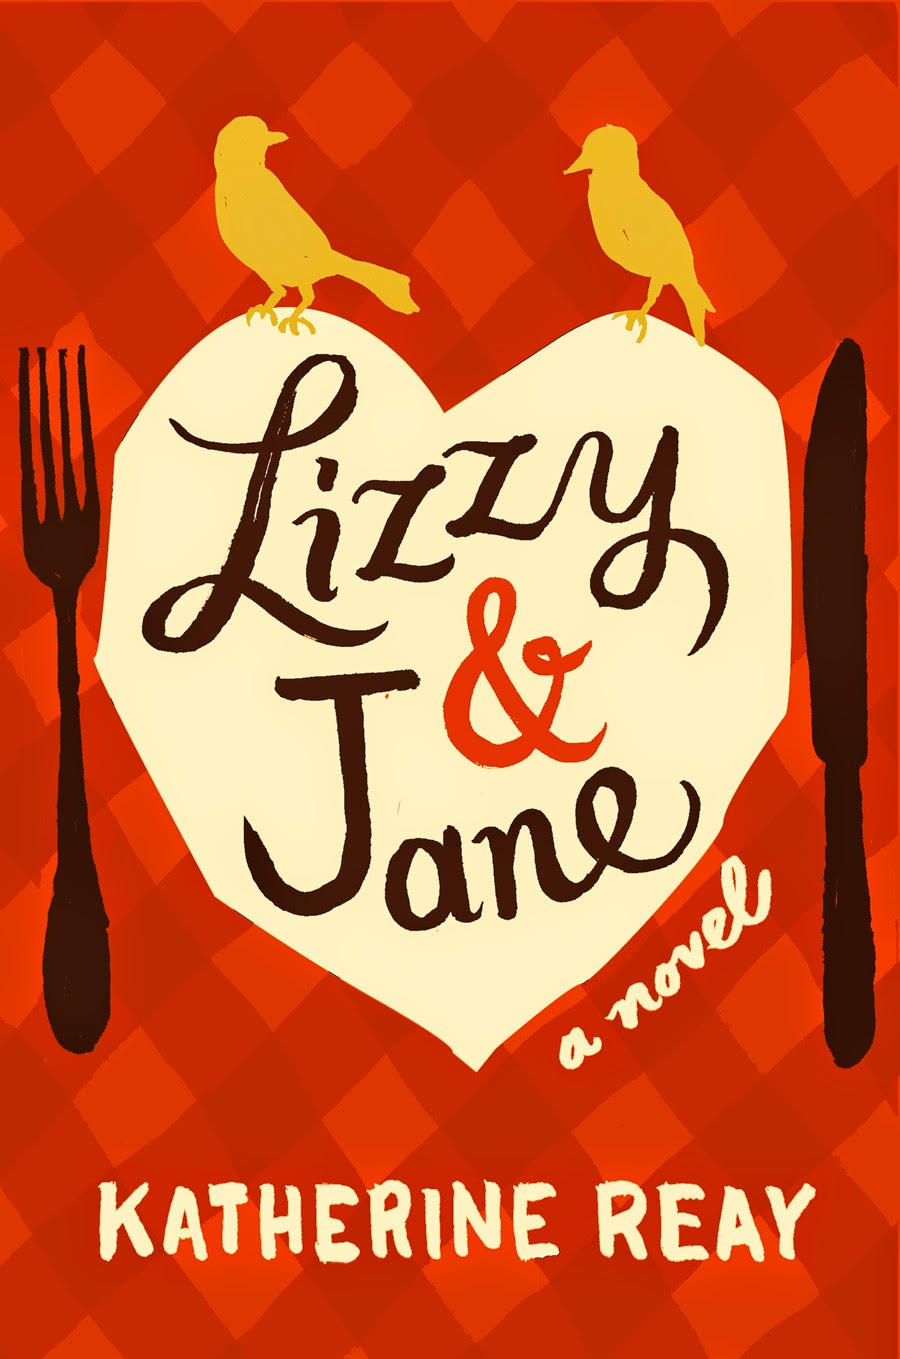 Lizzy & Jane by Katherine Reay